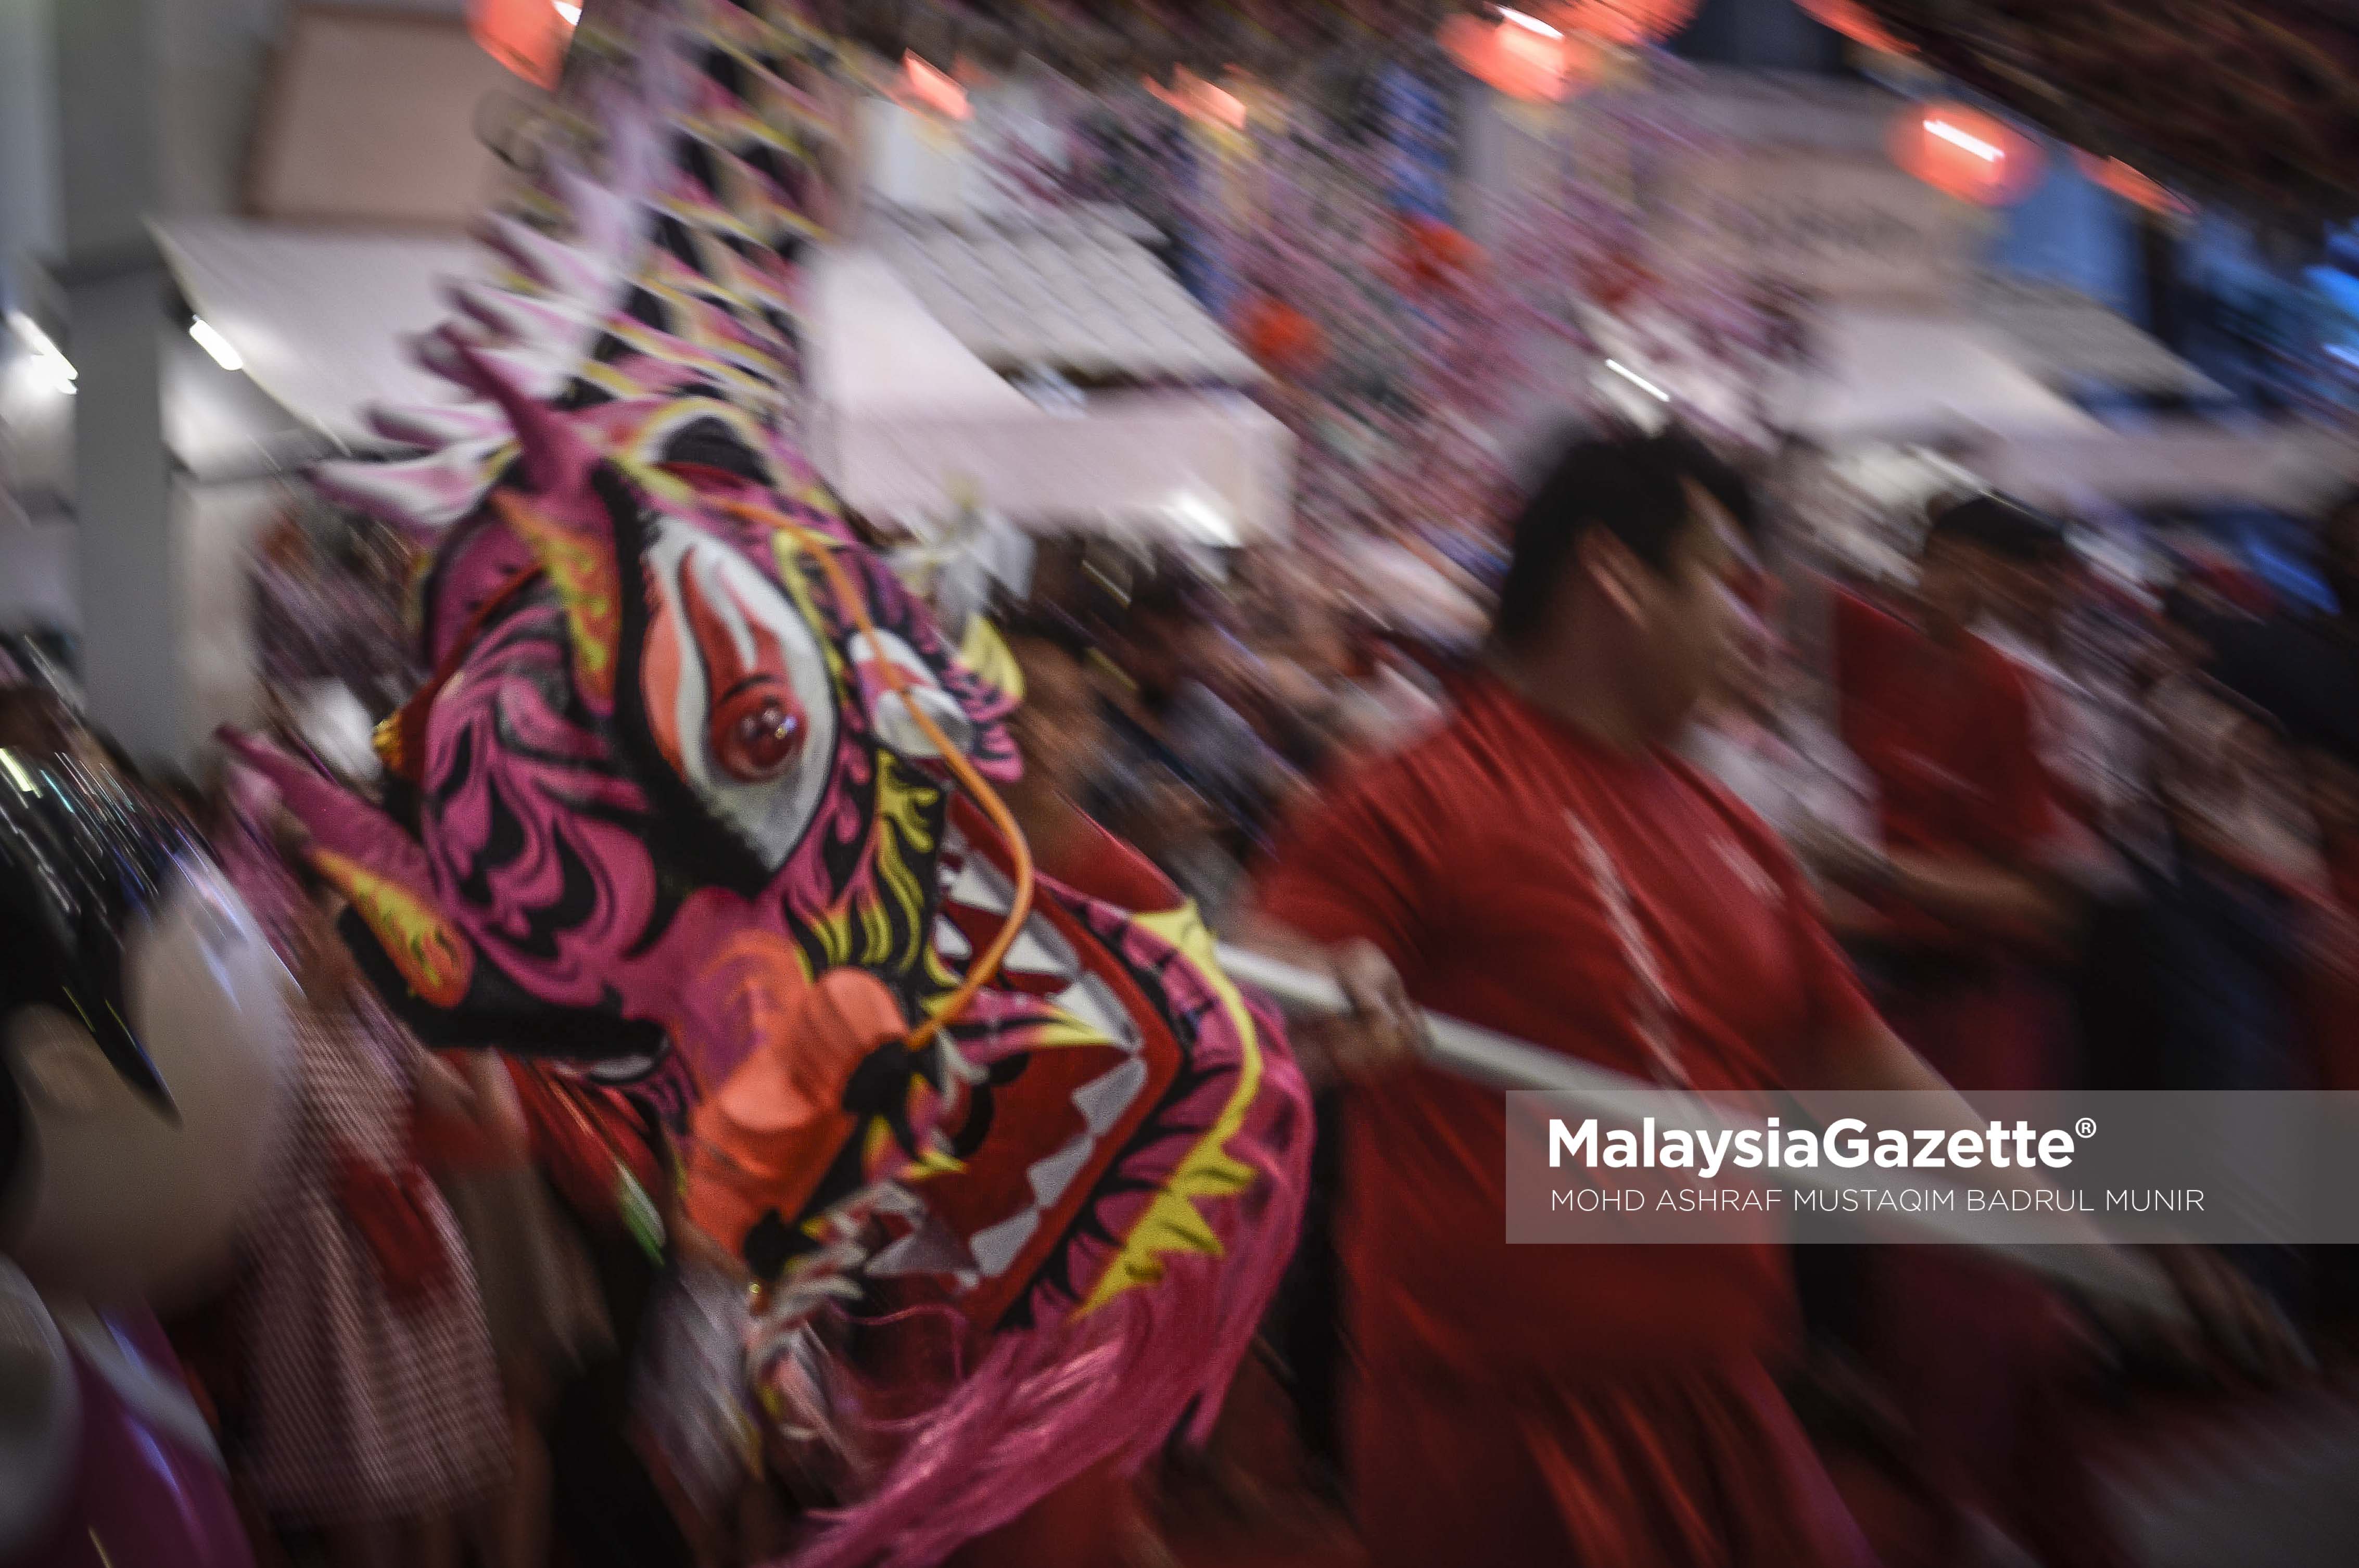 Persembahan Tarian Naga sebagai simbolik di ruang pameran budaya masyarakat Tiong Hua yang dipamerkan sempena perayaan Tahun Baru Cina 2017 ketika tinjauan lensa Malaysia Gazette di Berjaya Times Square Kuala Lumpur. foto ASHRAF MUSTAQIM BADRUL MUNIR, 28 JANUARI 2017.